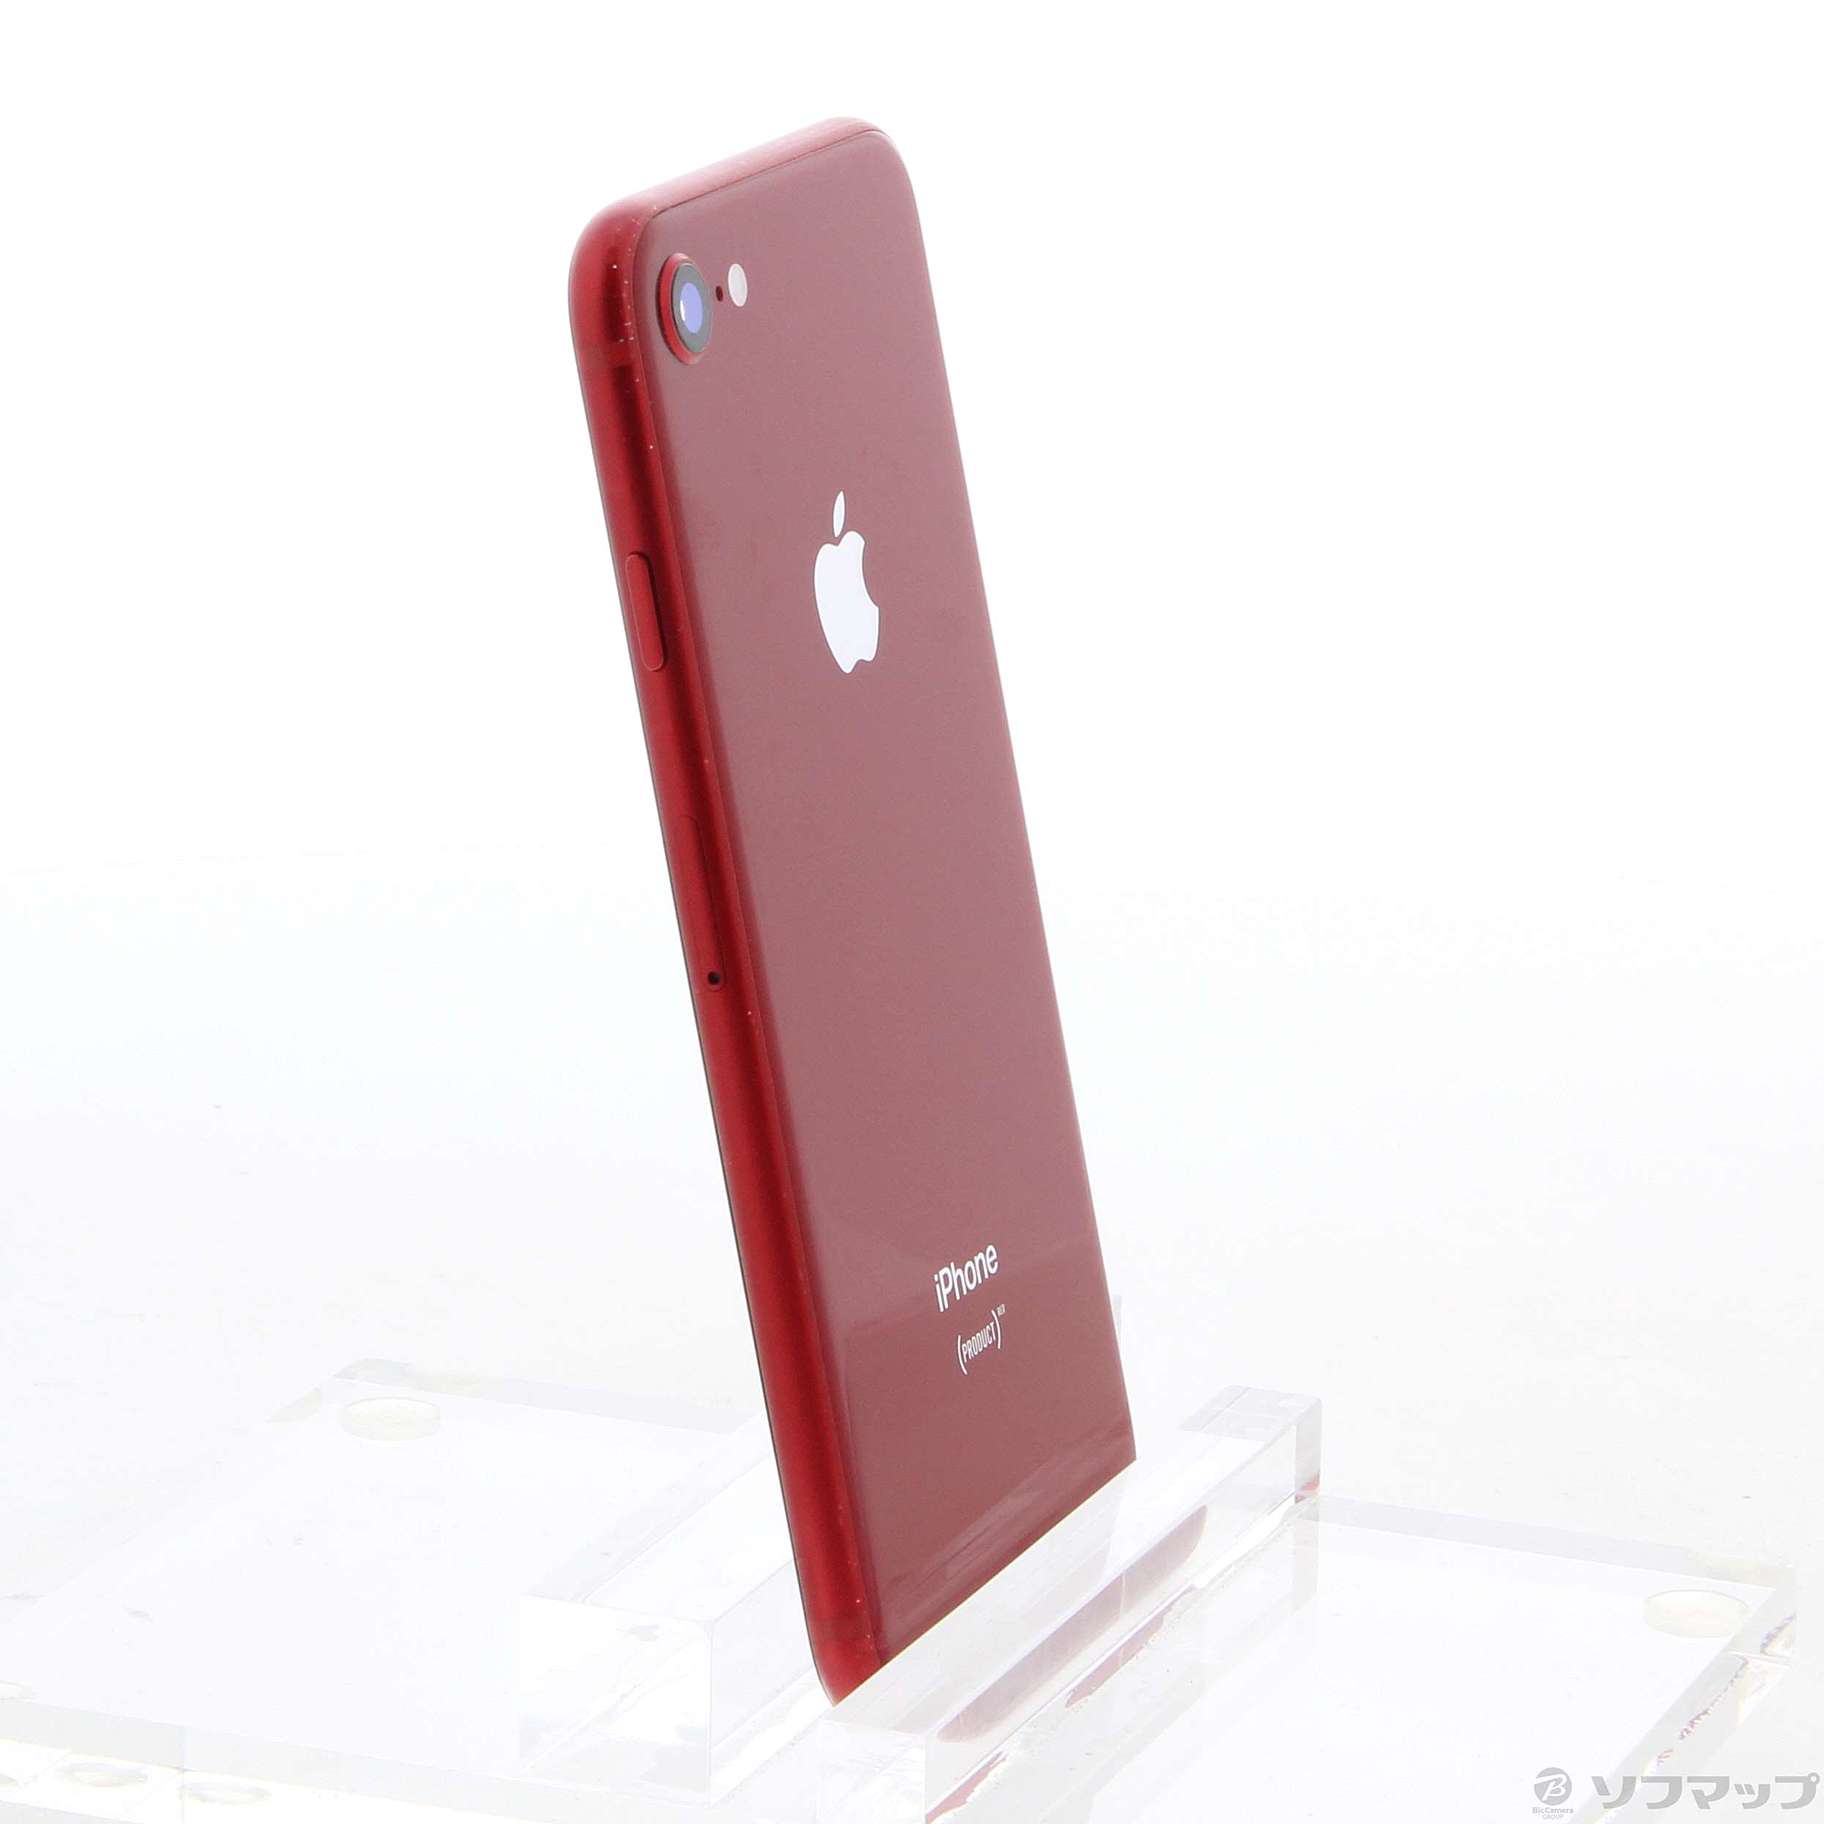 新品並iPhone 8 64GB PRODUCT RED SIMFREE 交換品